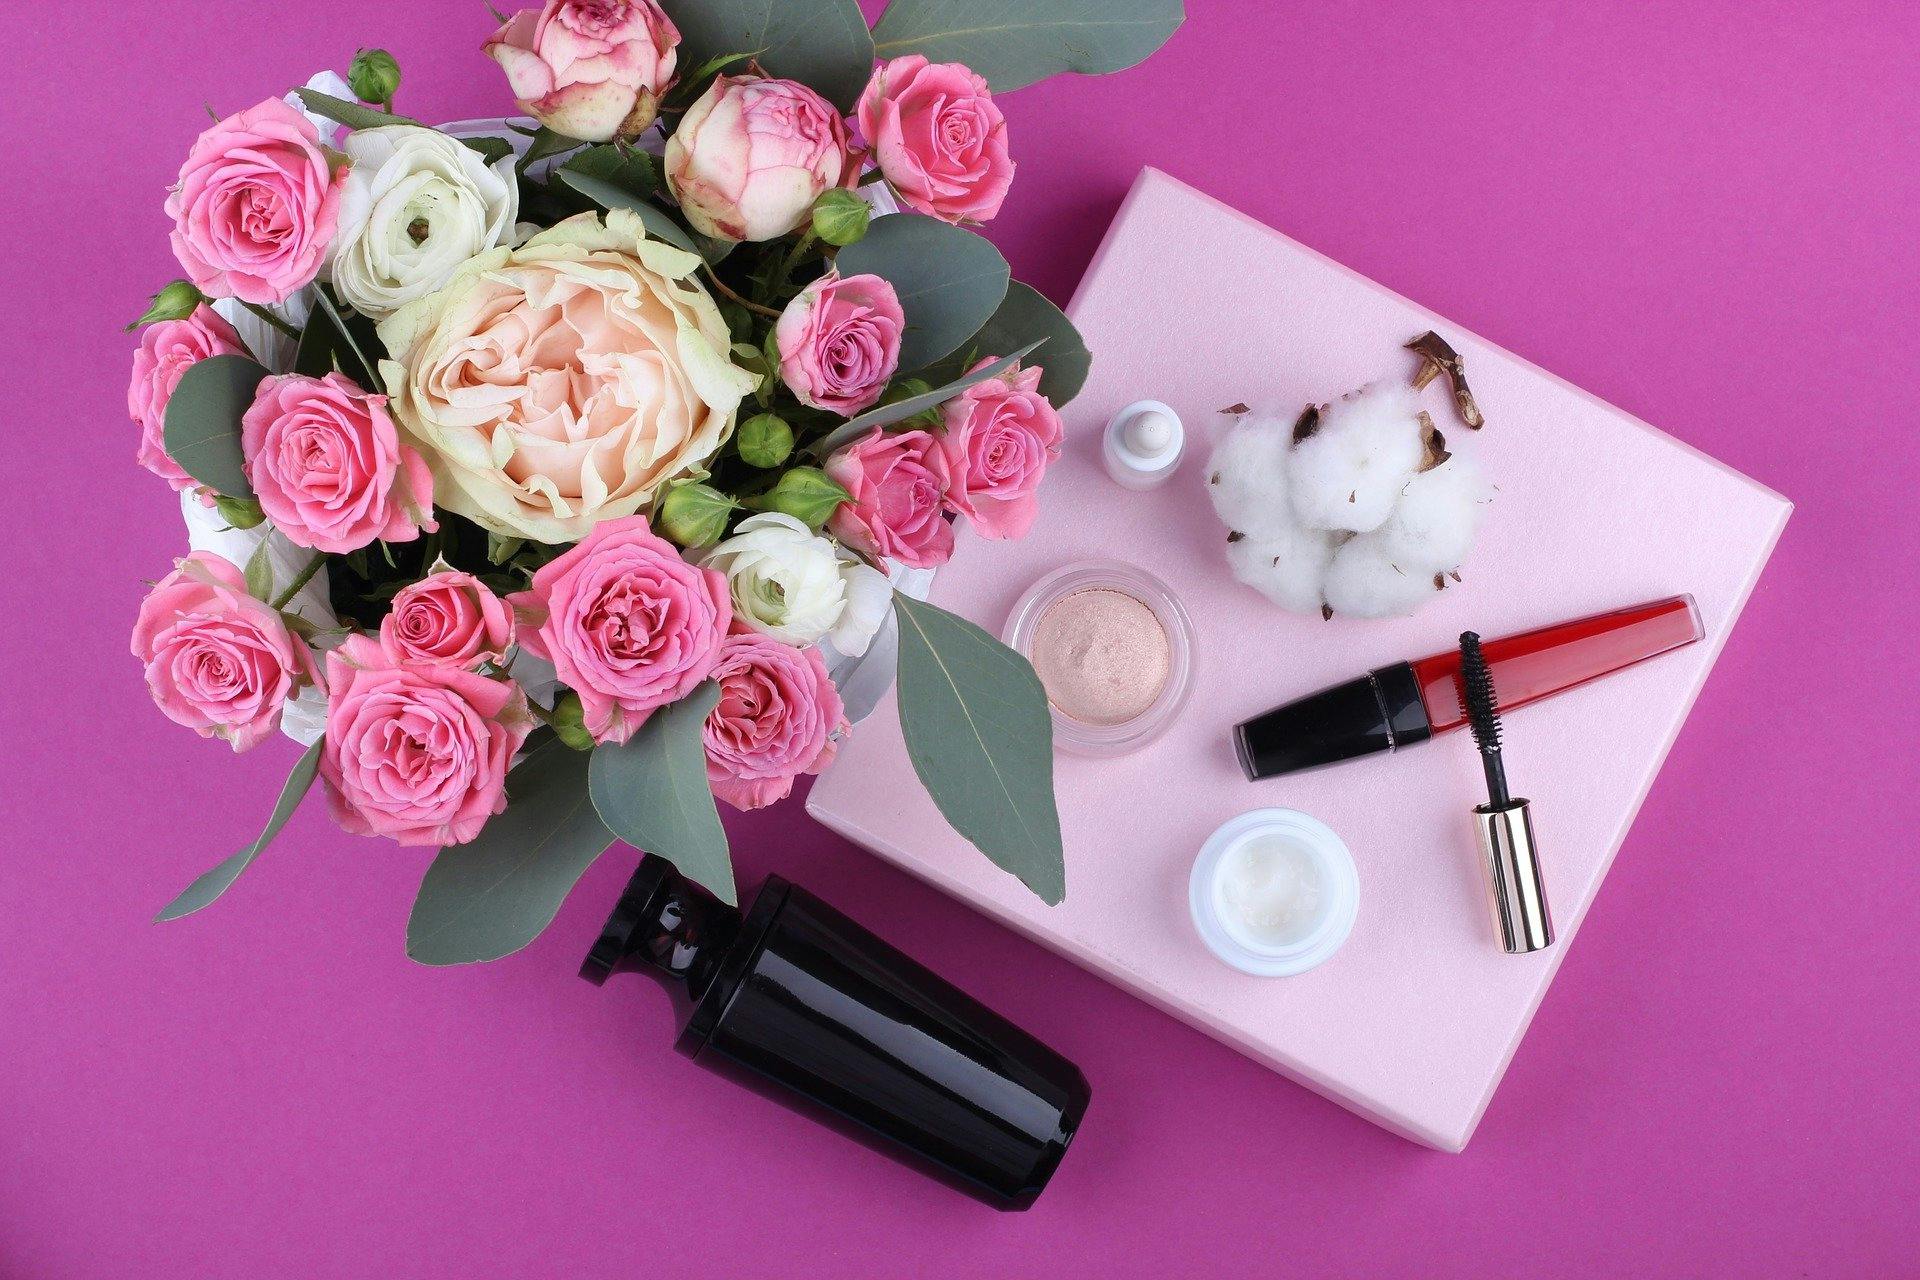 Kosmetik auf einem pinken Tisch mit Blumenstrauß.